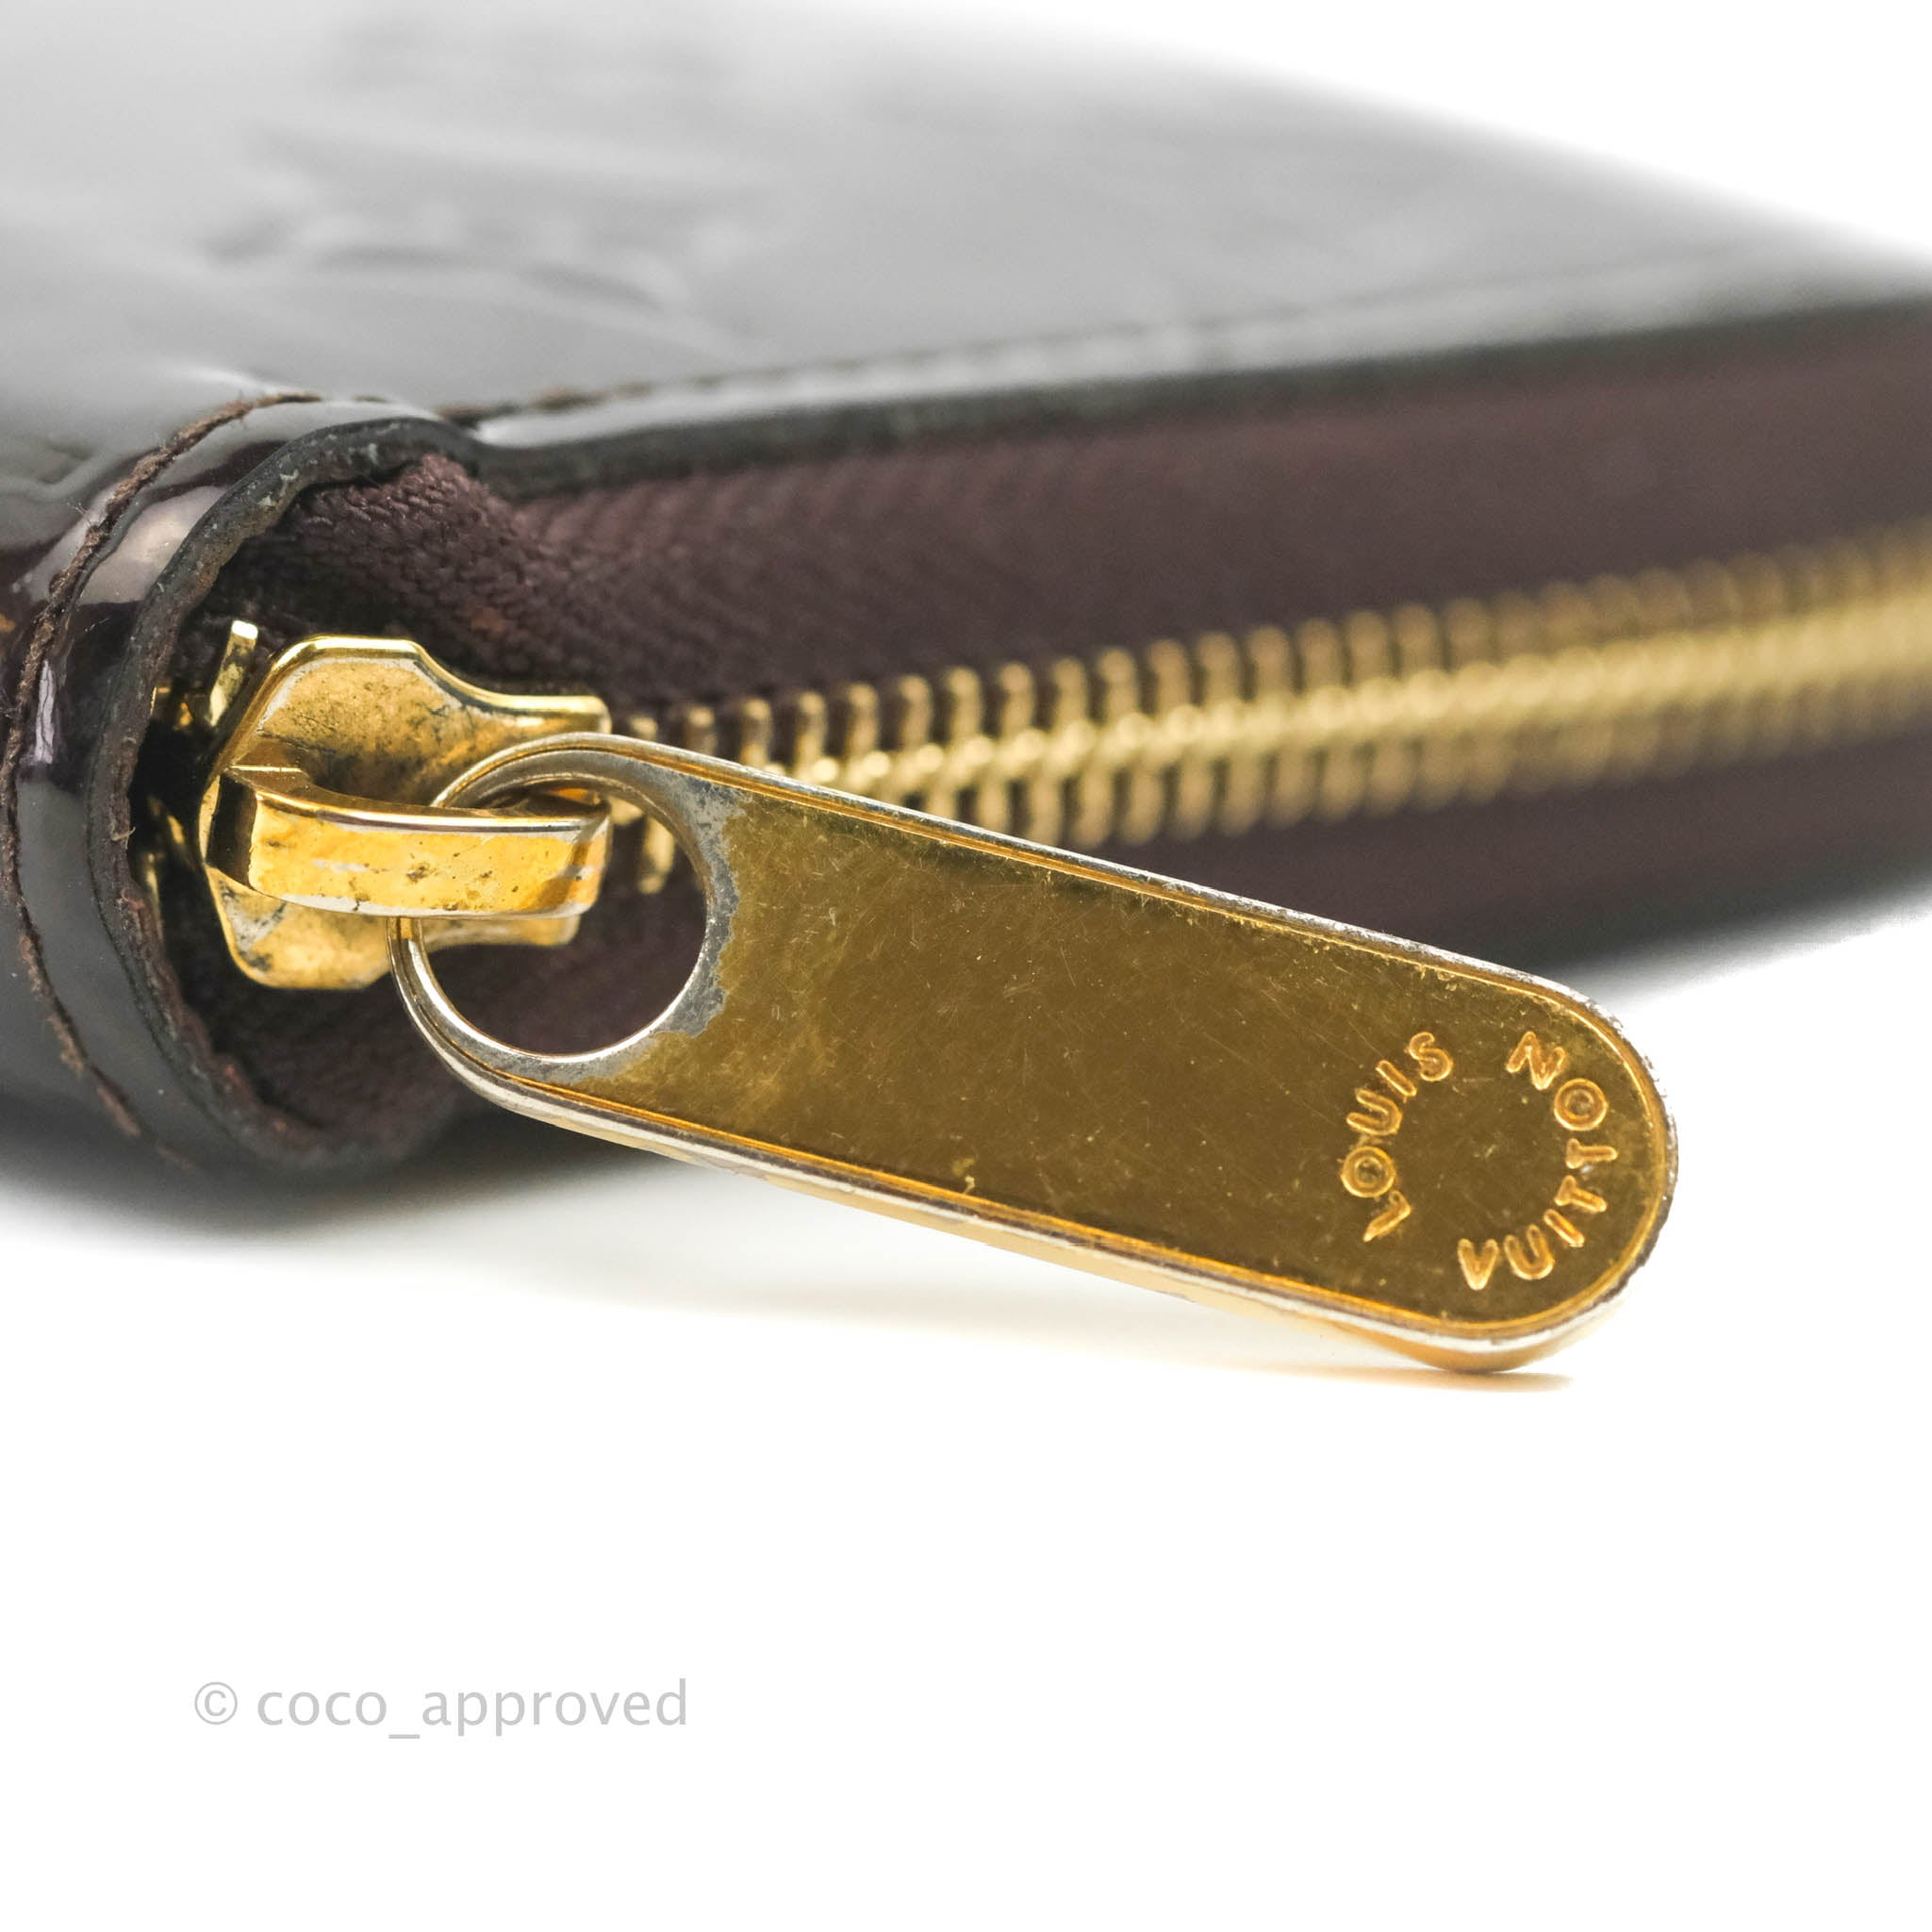 Louis Vuitton Amarante Monogram Vernis Zippy Wallet Louis Vuitton | The  Luxury Closet